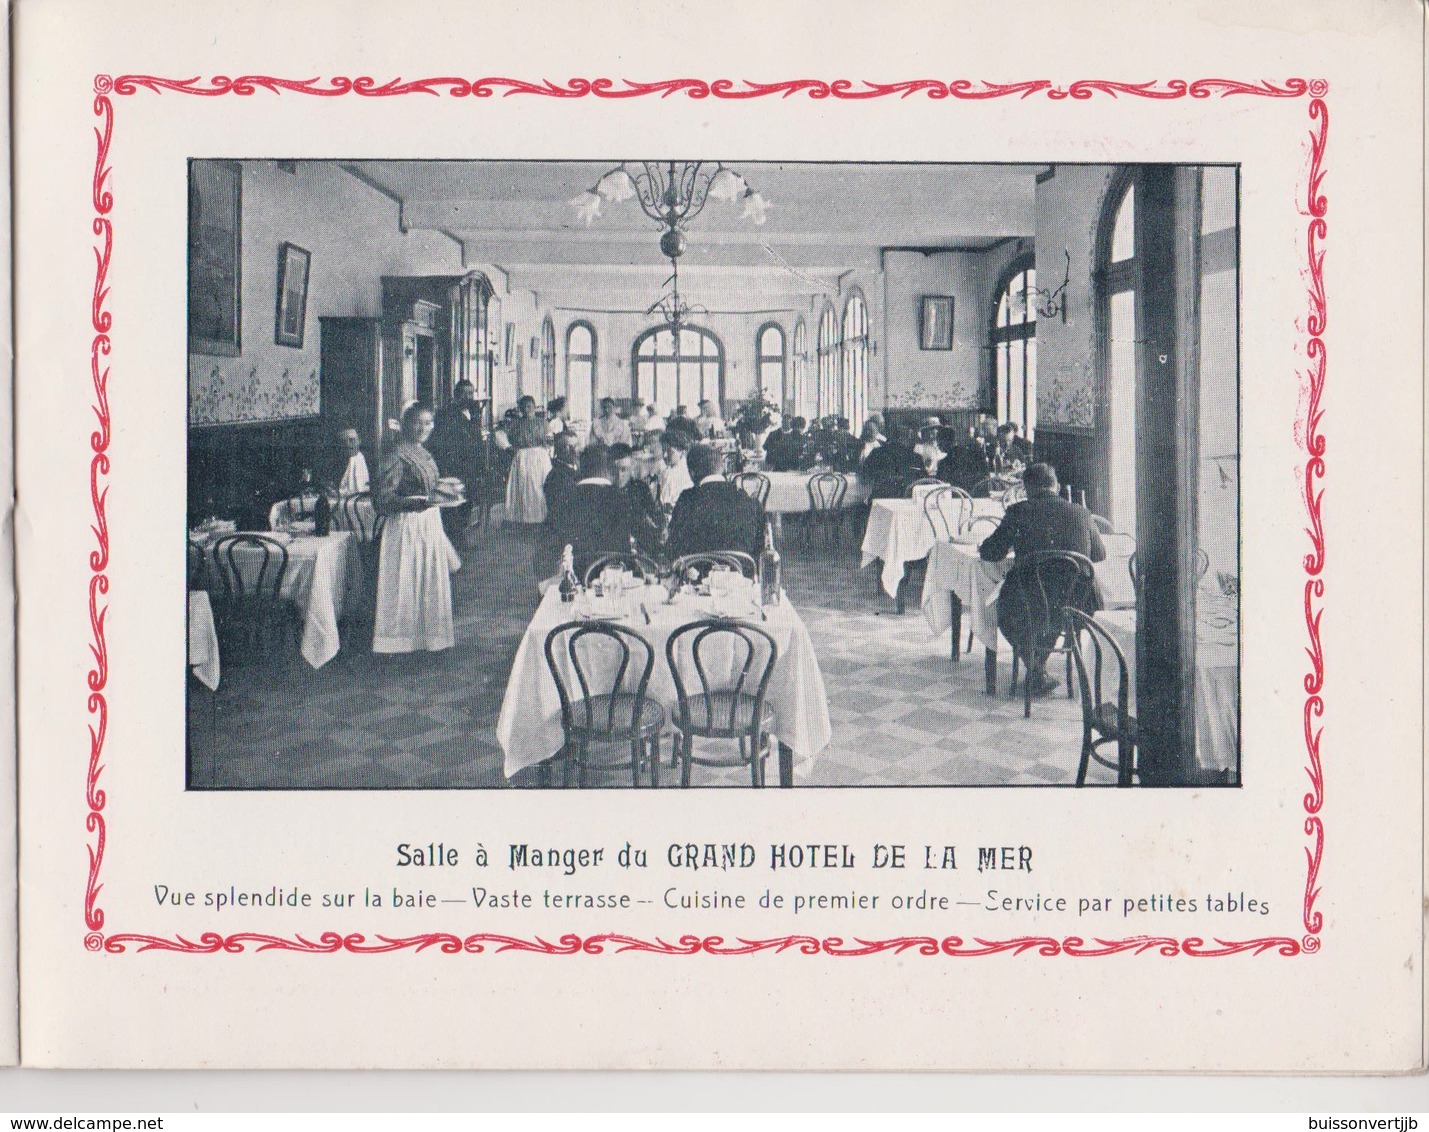 29 - Morgat - Gd Hôtel et Hôtel de la Mer - Petite brochure publicitaire-